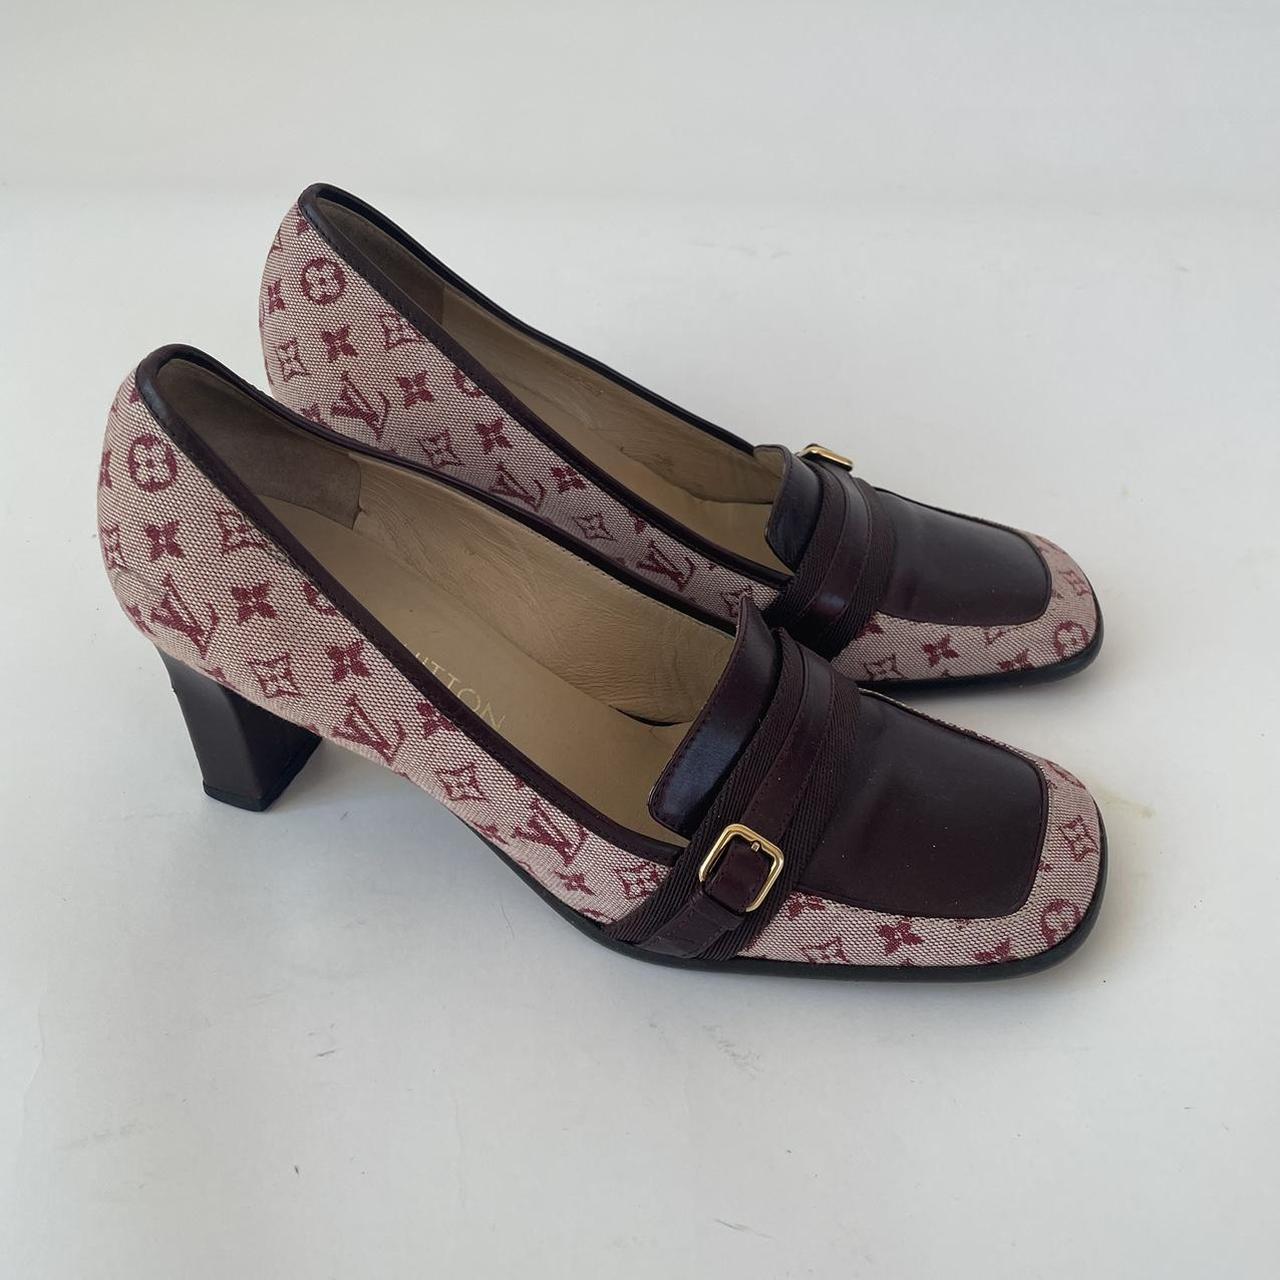 Used vintage Louis Vuitton heels - Depop